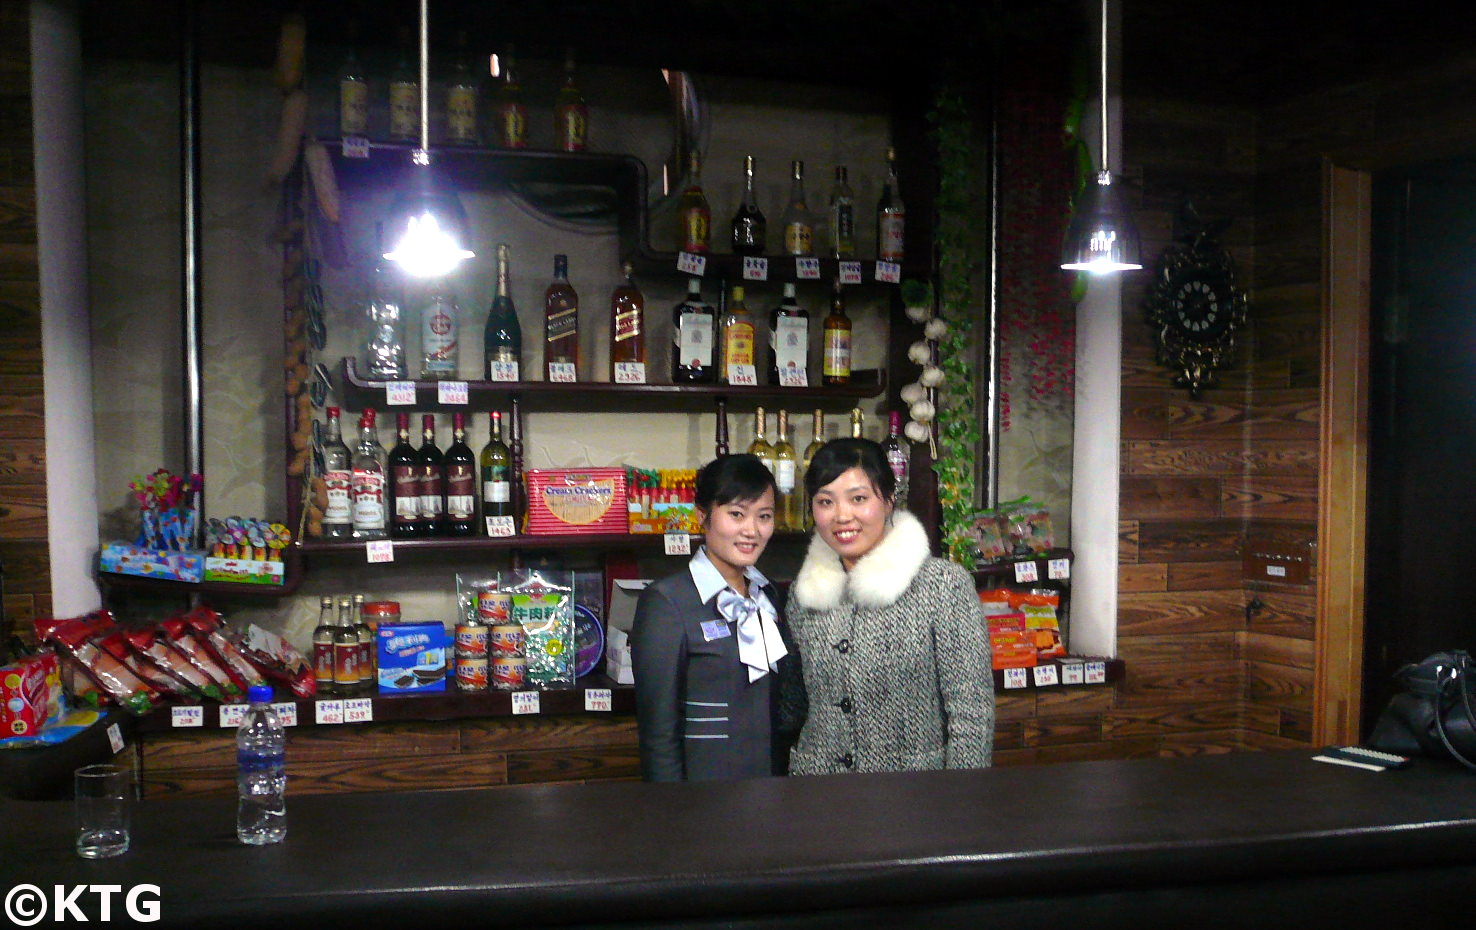 
Damas en un bar en Corea del Norte en el hotel Sinsunhang Hamhung, la segunda ciudad más grande de la RPDC. Foto tomada por KTG Tours